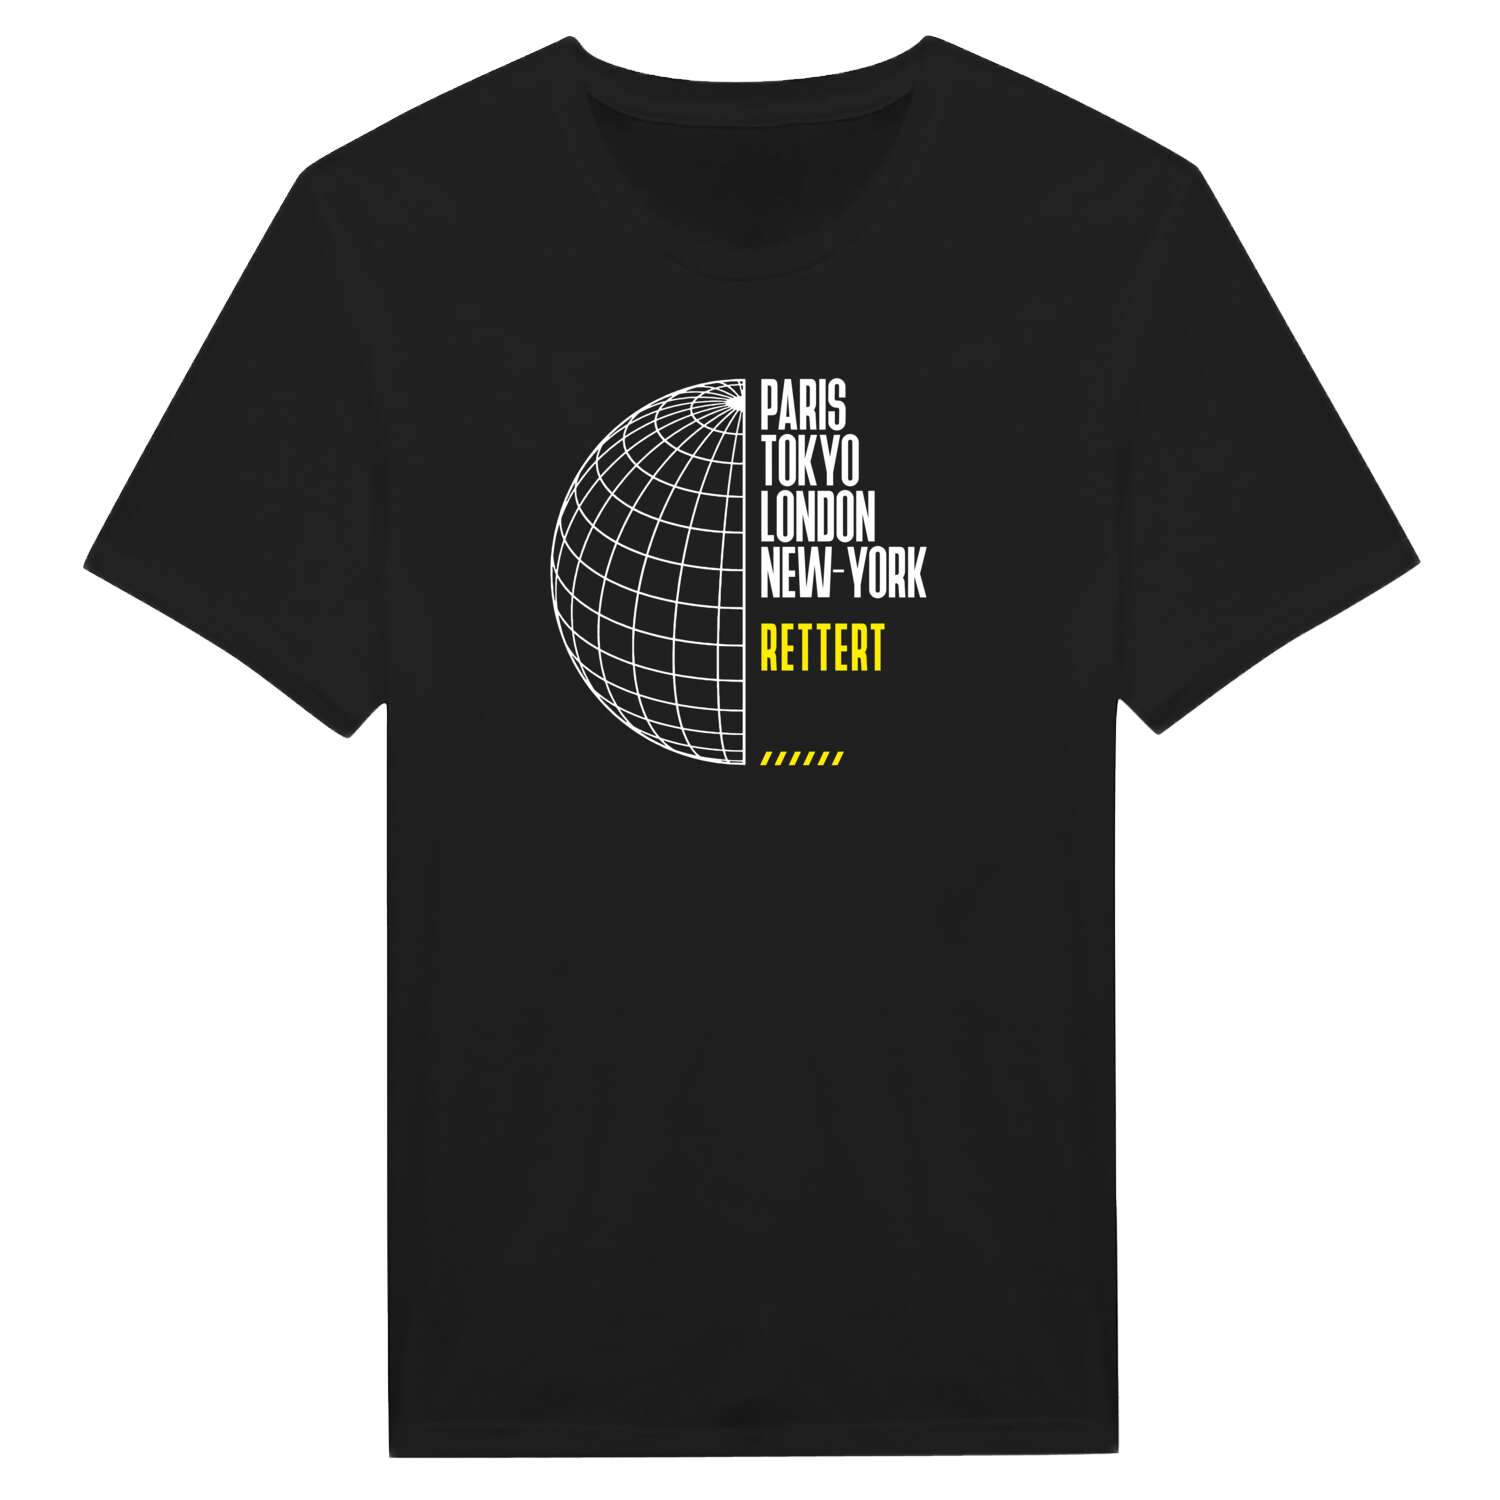 Rettert T-Shirt »Paris Tokyo London«